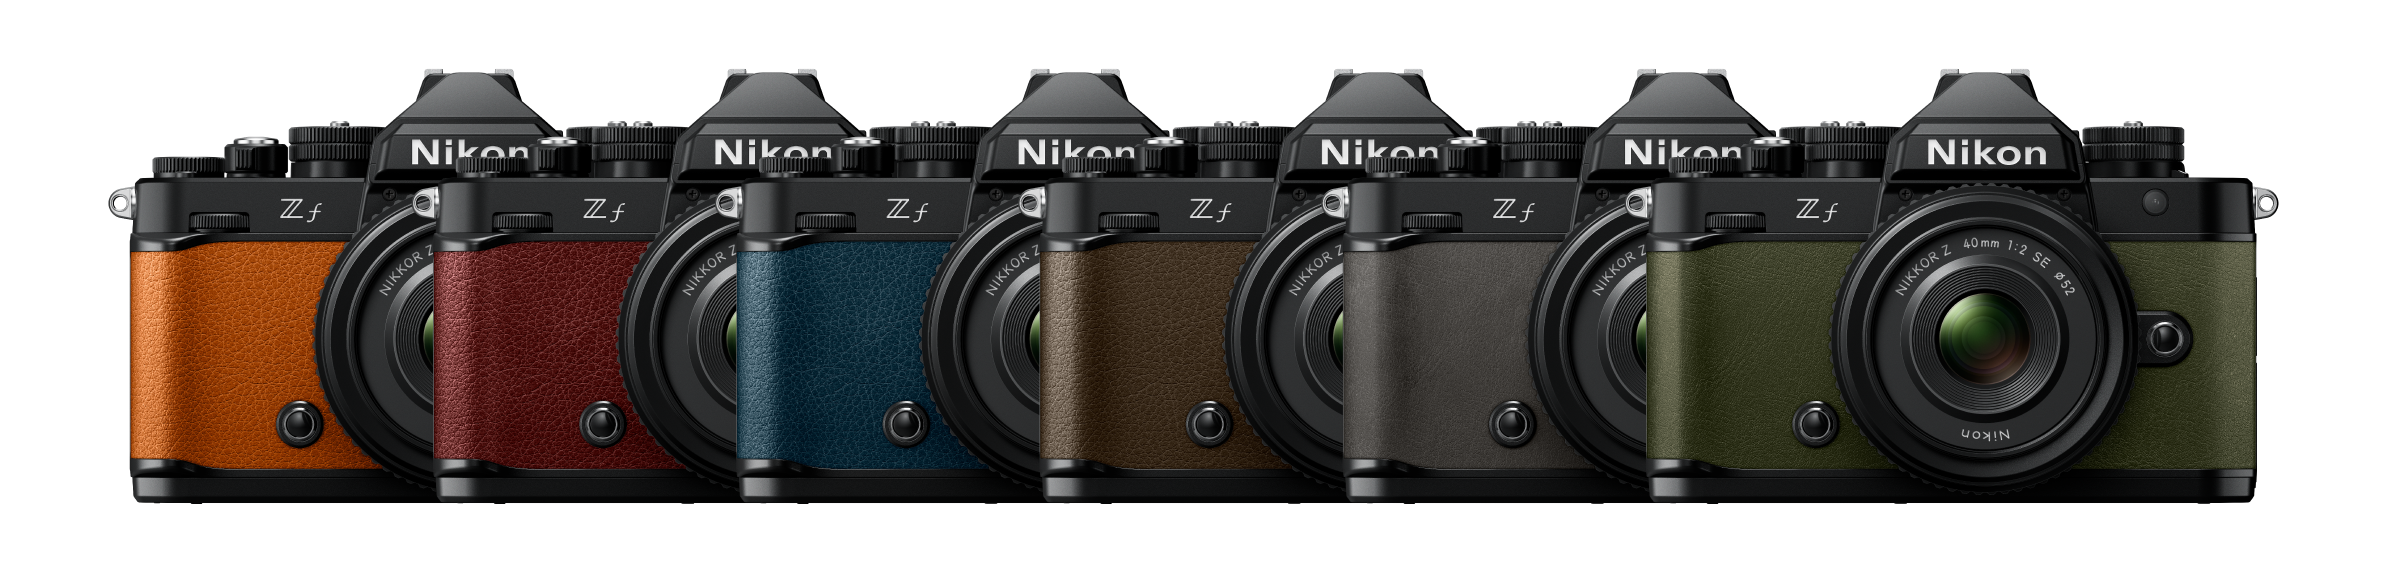 مجموعة ألوان الكاميرا Nikon Zf صغيرة الحجم بدون مرآة | الكاميرات، والعدسات، والملحقات من Nikon